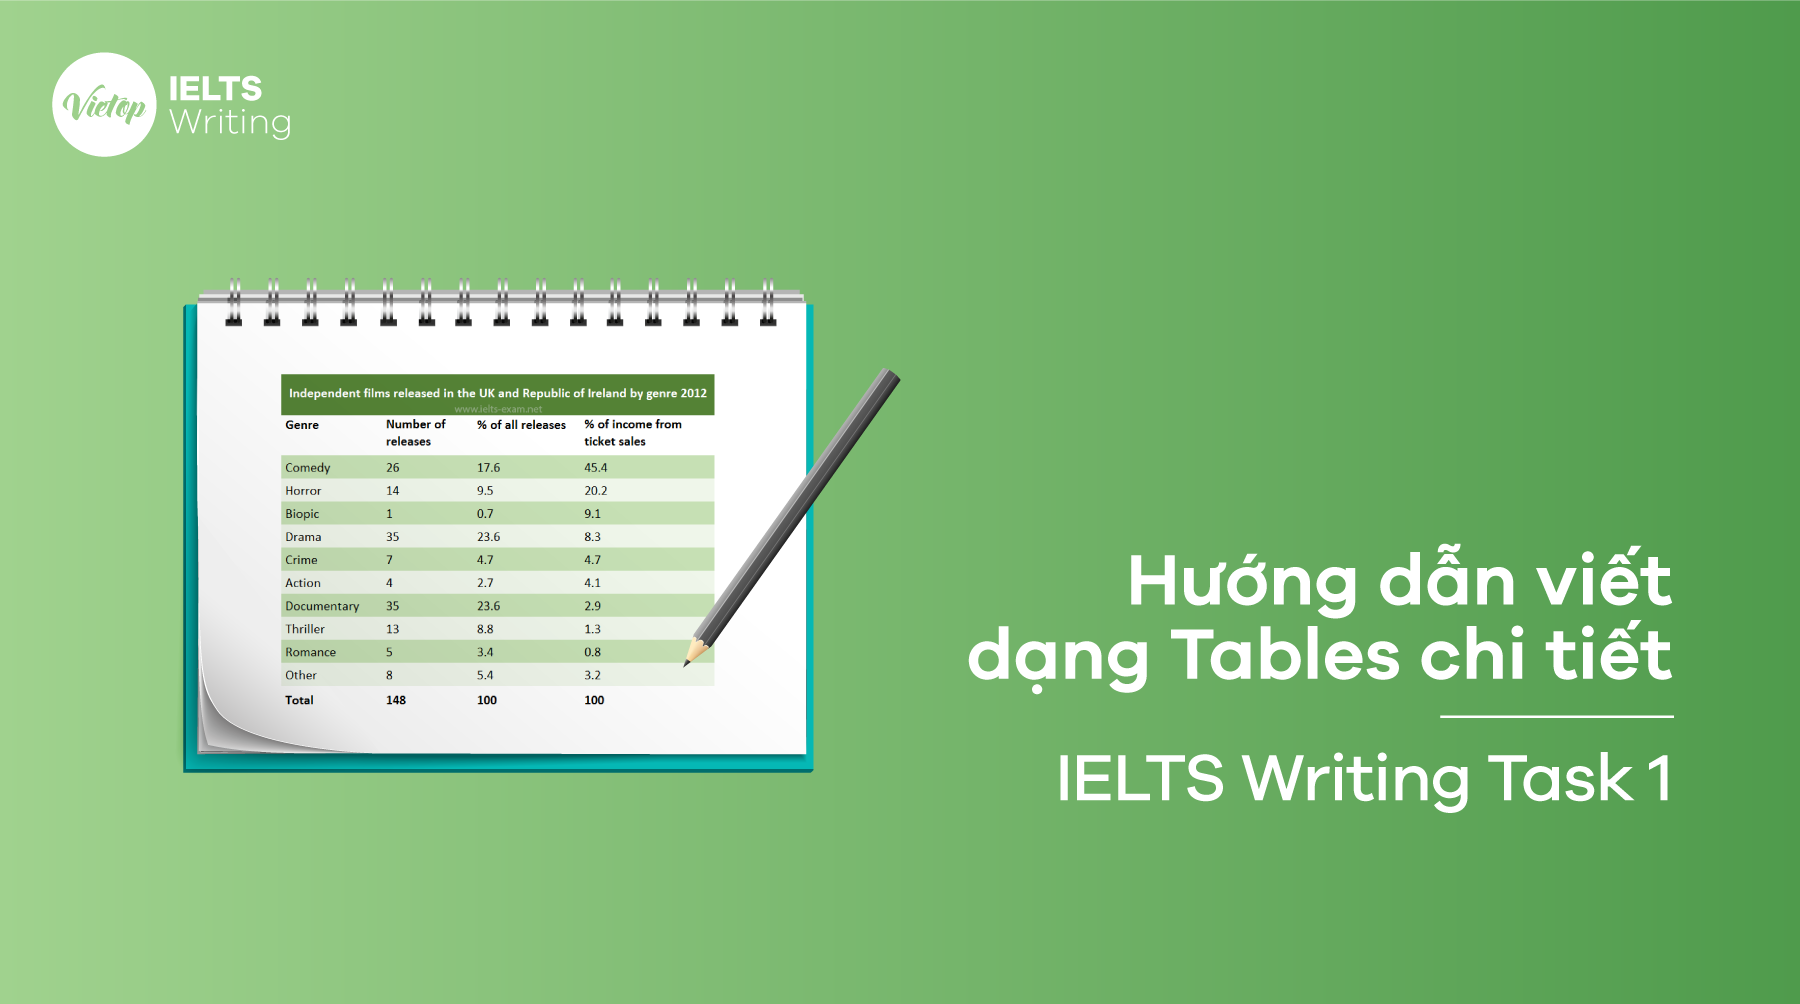 Hướng dẫn viết IELTS Writing Task 1 dạng Table chi tiết